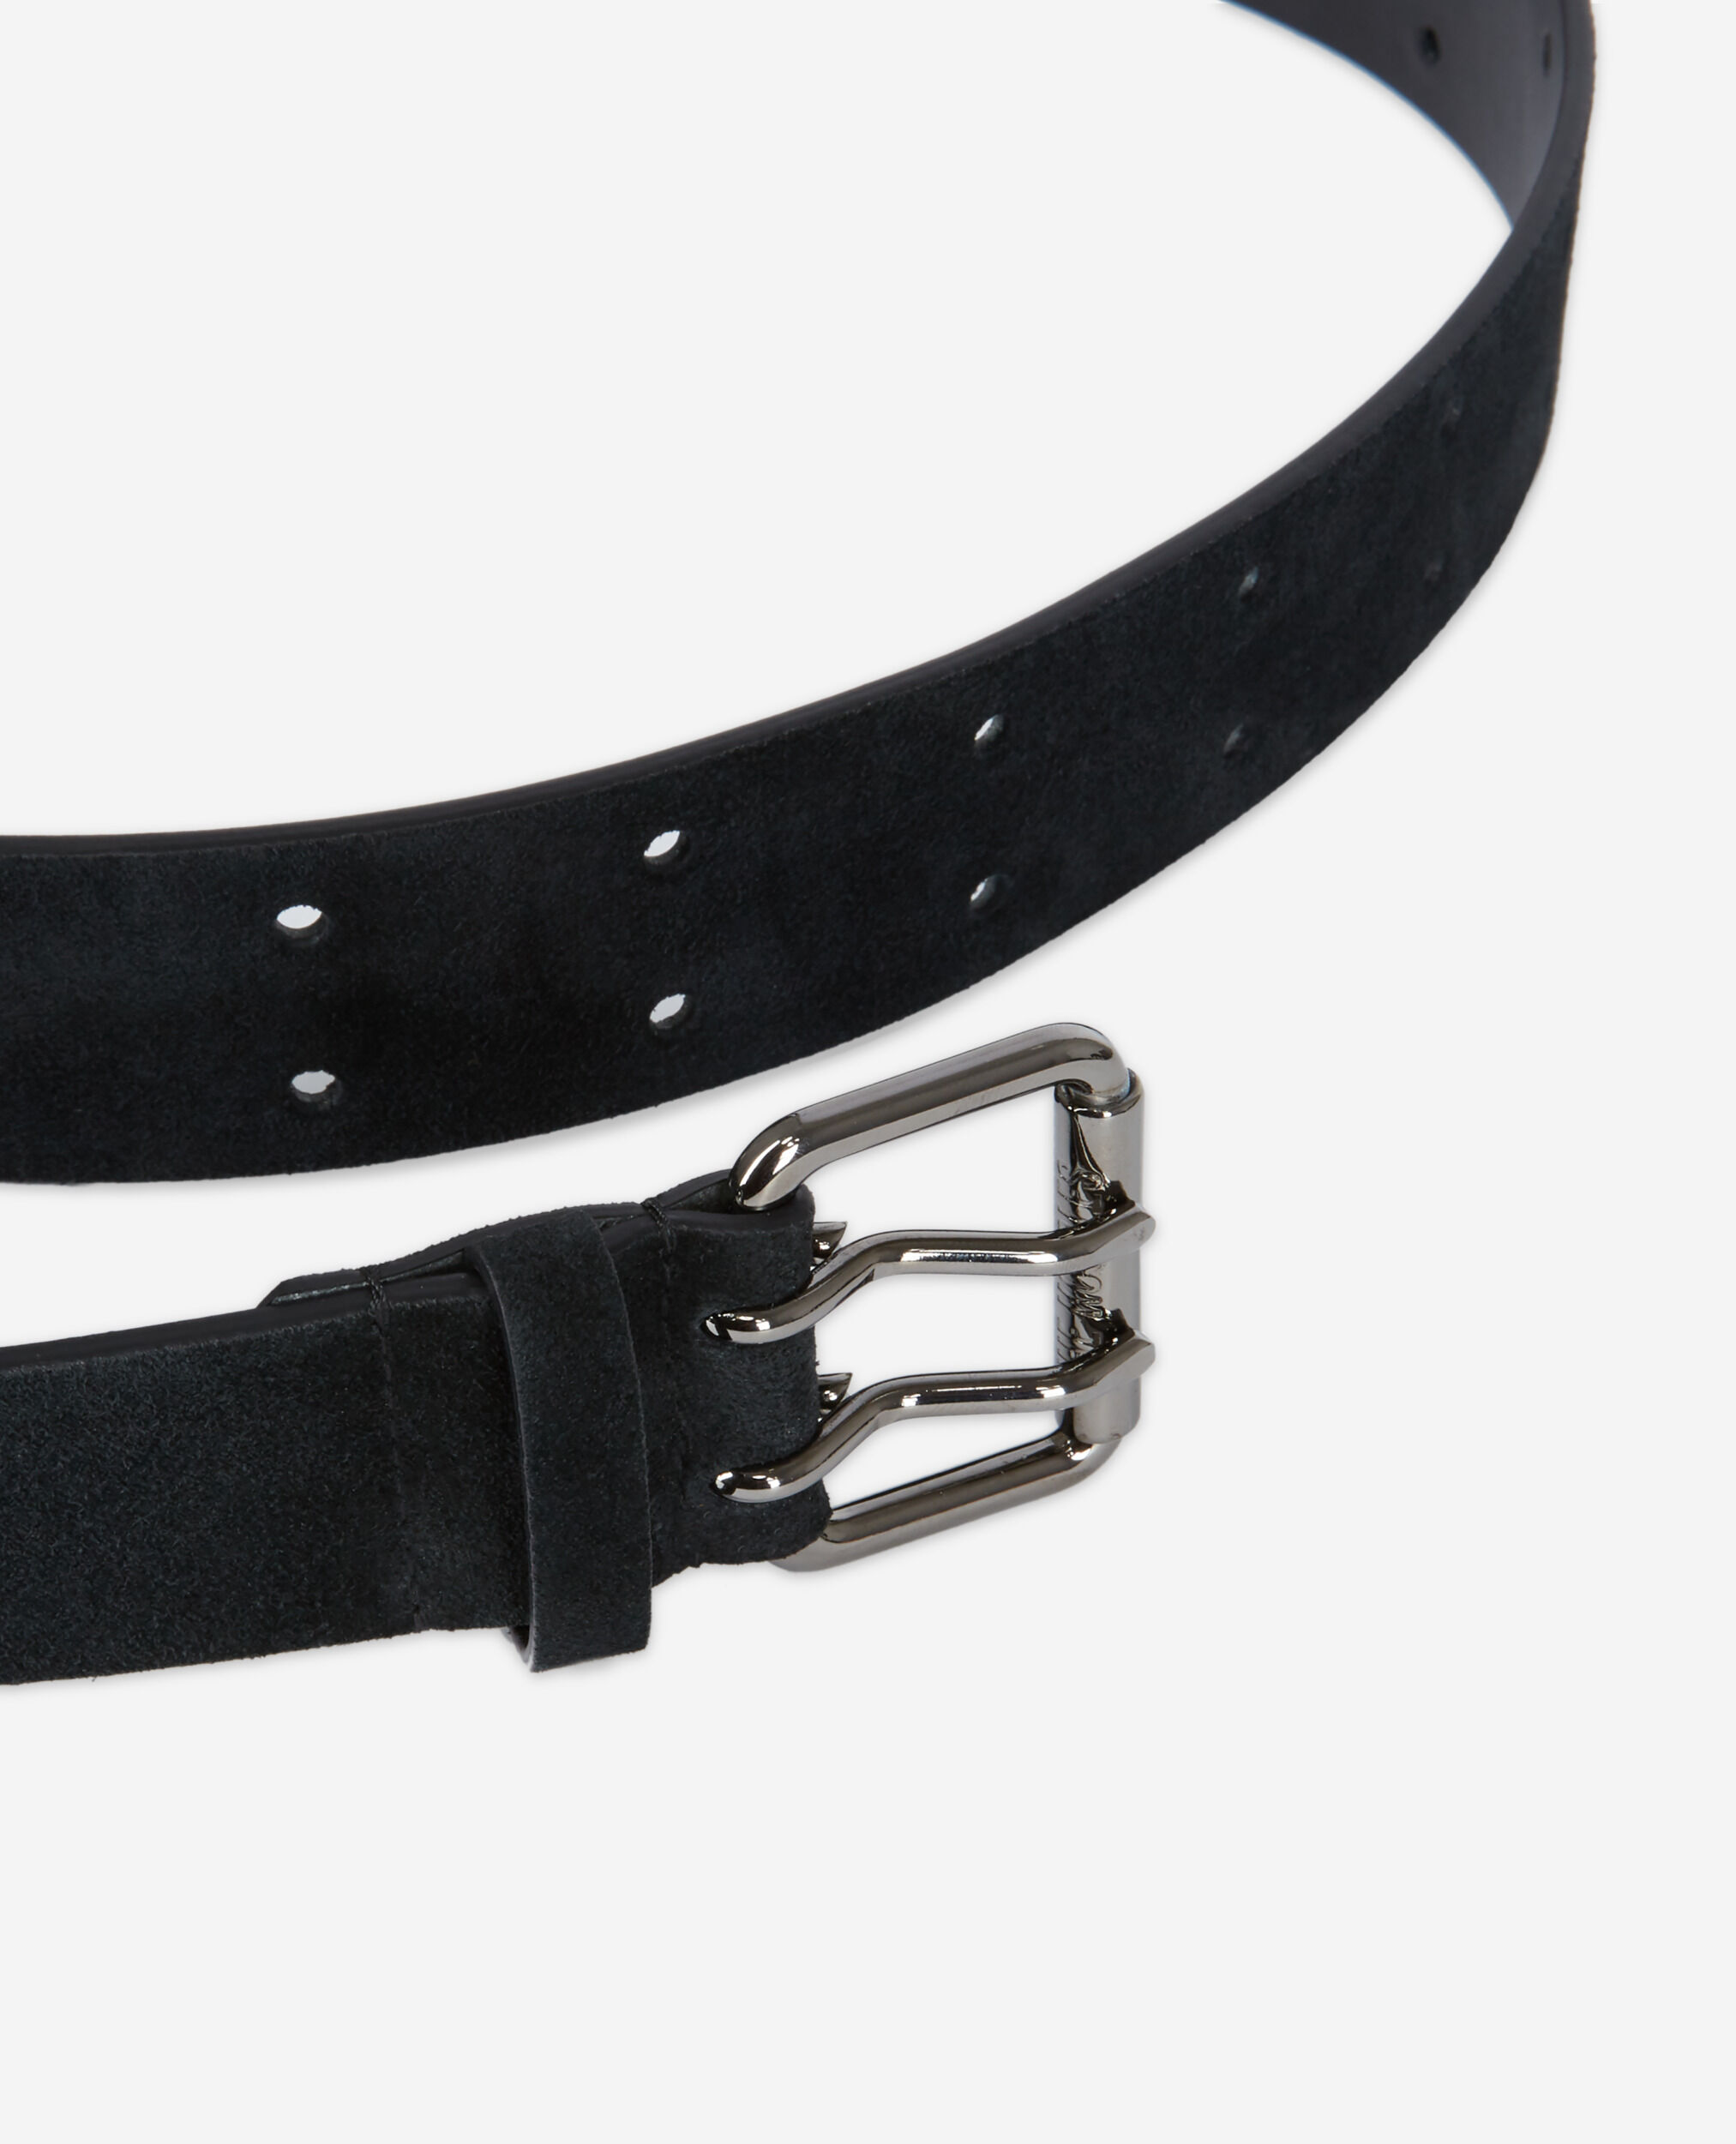 Black suede leather belt, BLACK, hi-res image number null